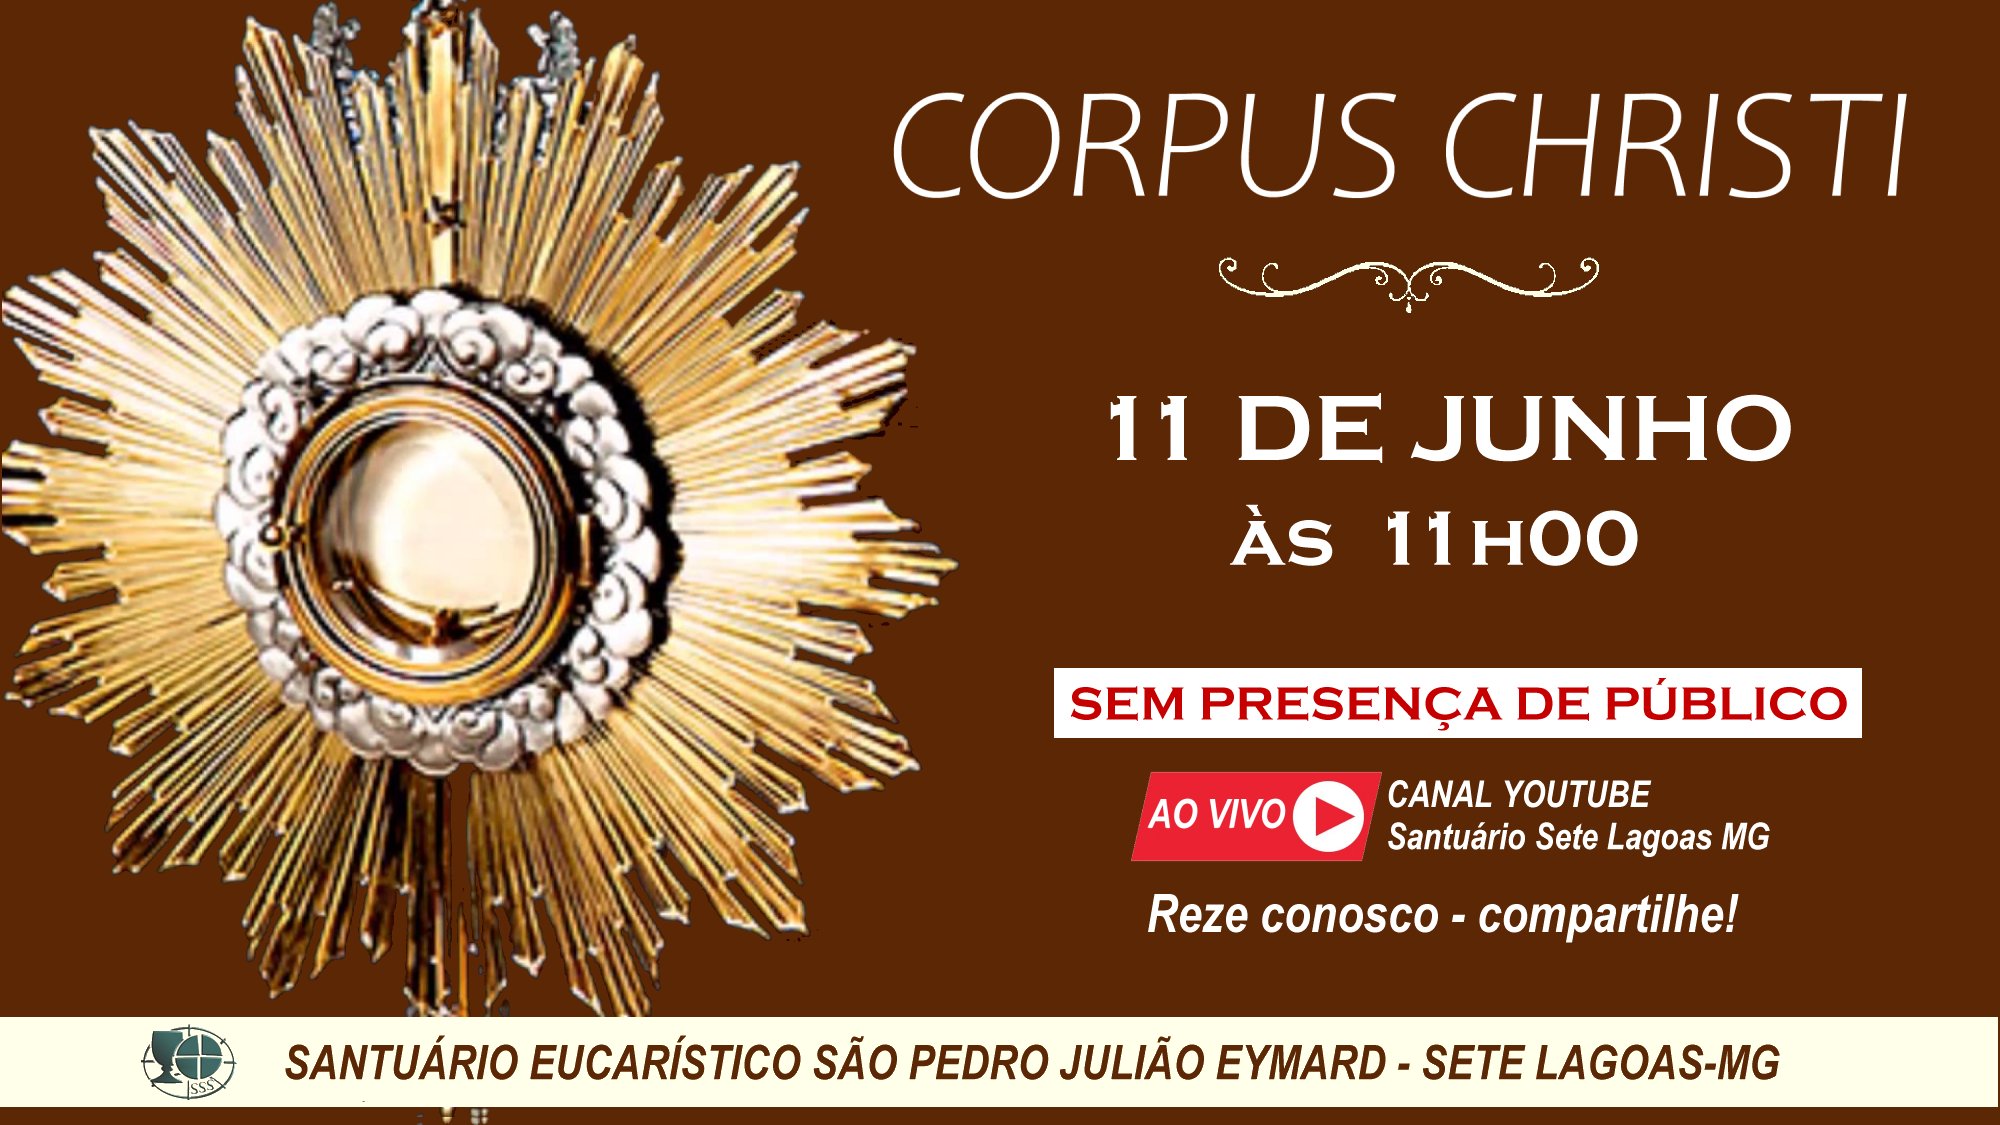 Solenidade de Corpus Christi com transmissão ao vivo, 11/06. Participe!